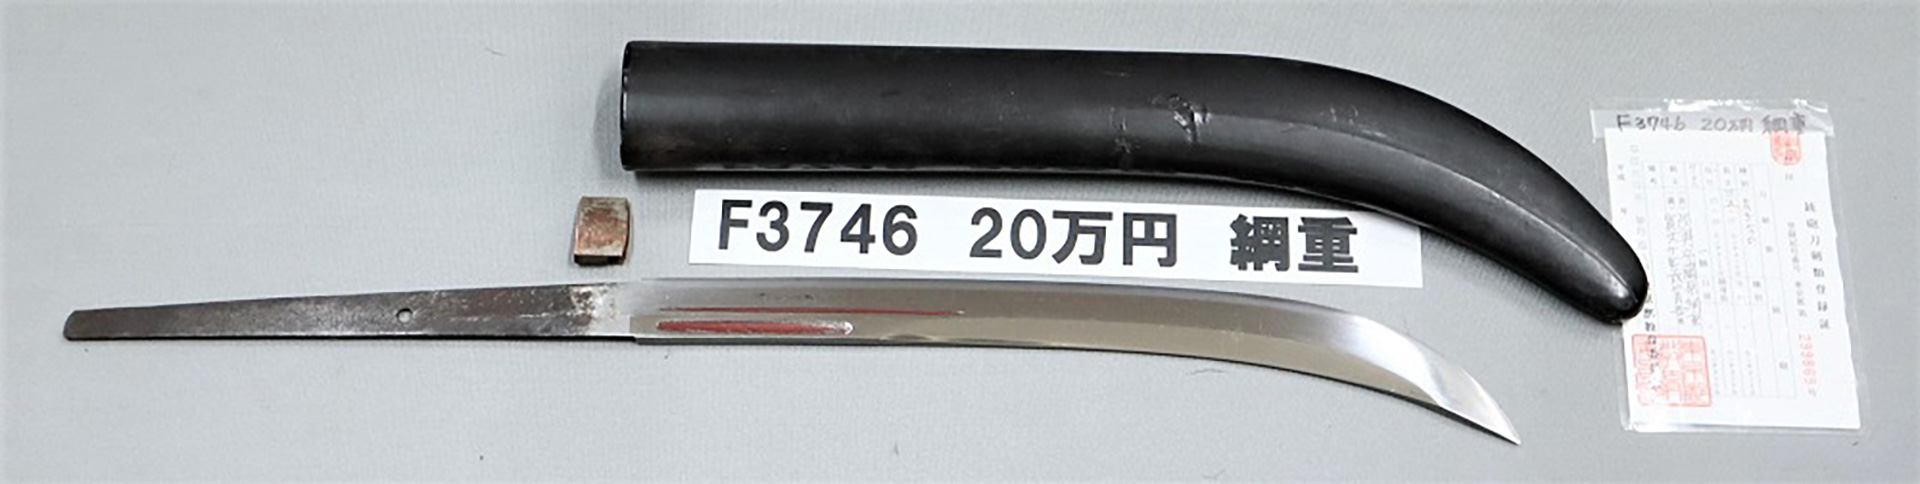 F3746